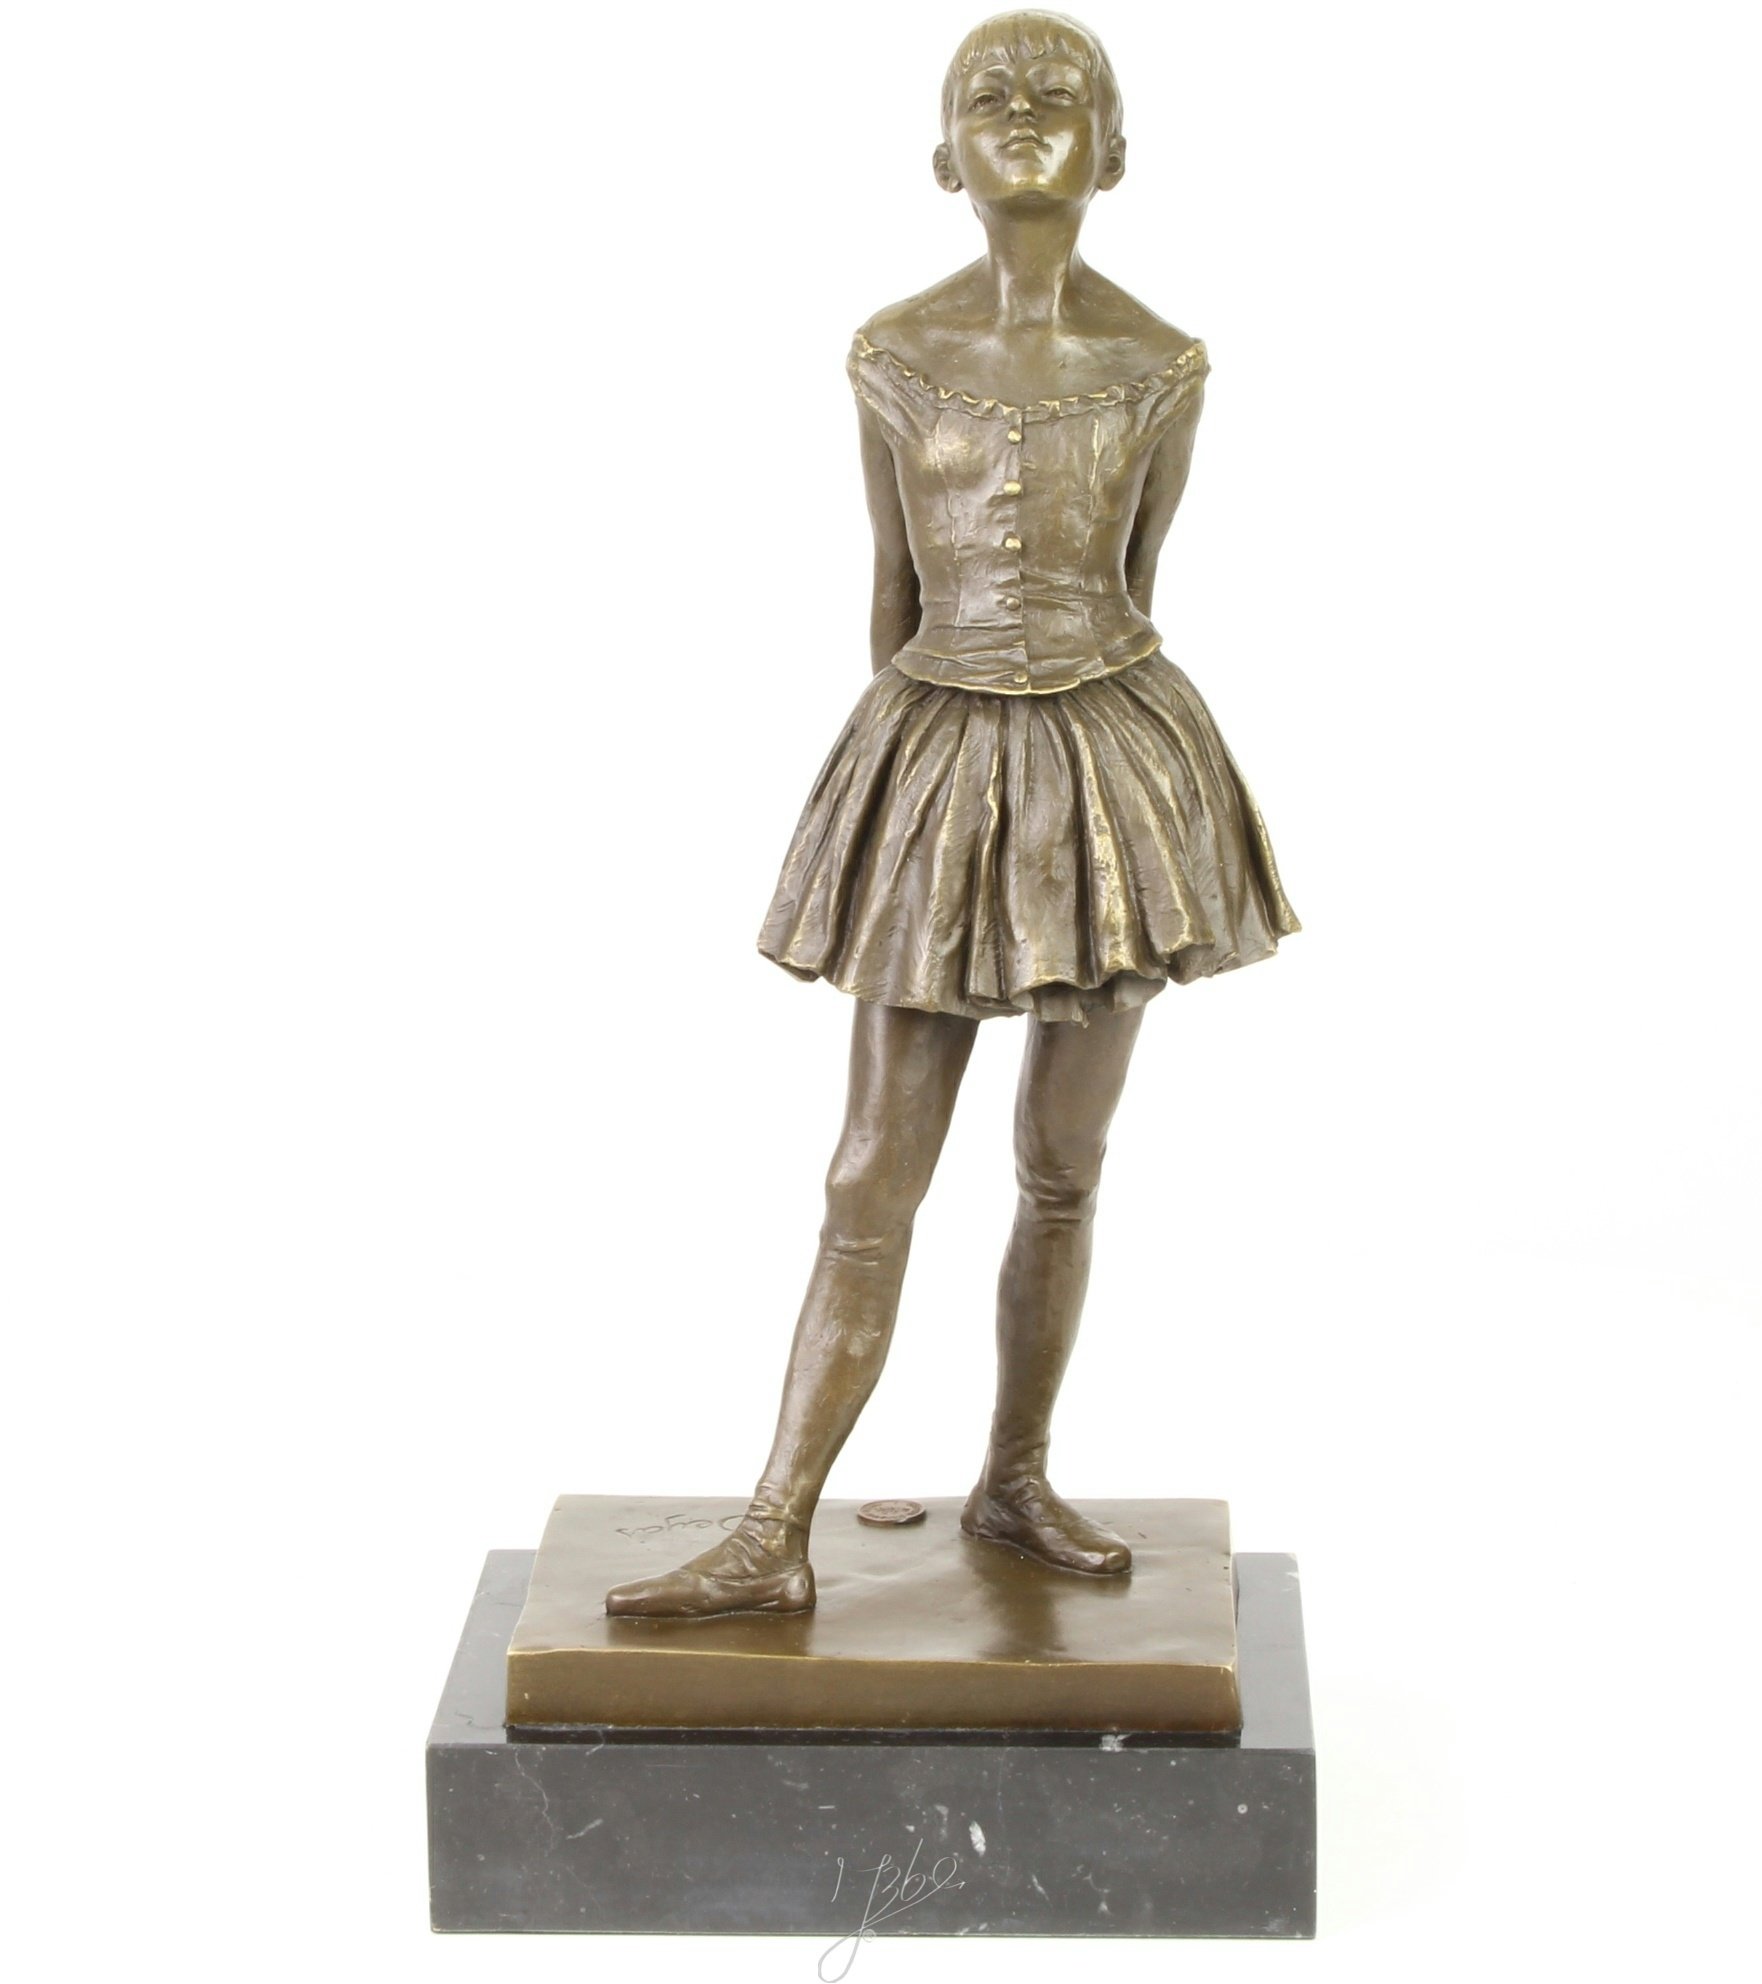 Moritz Bronzeskulptur Figur Skulptur Ballett Tänzerin 40cm Statue Antik-Stil Dancer